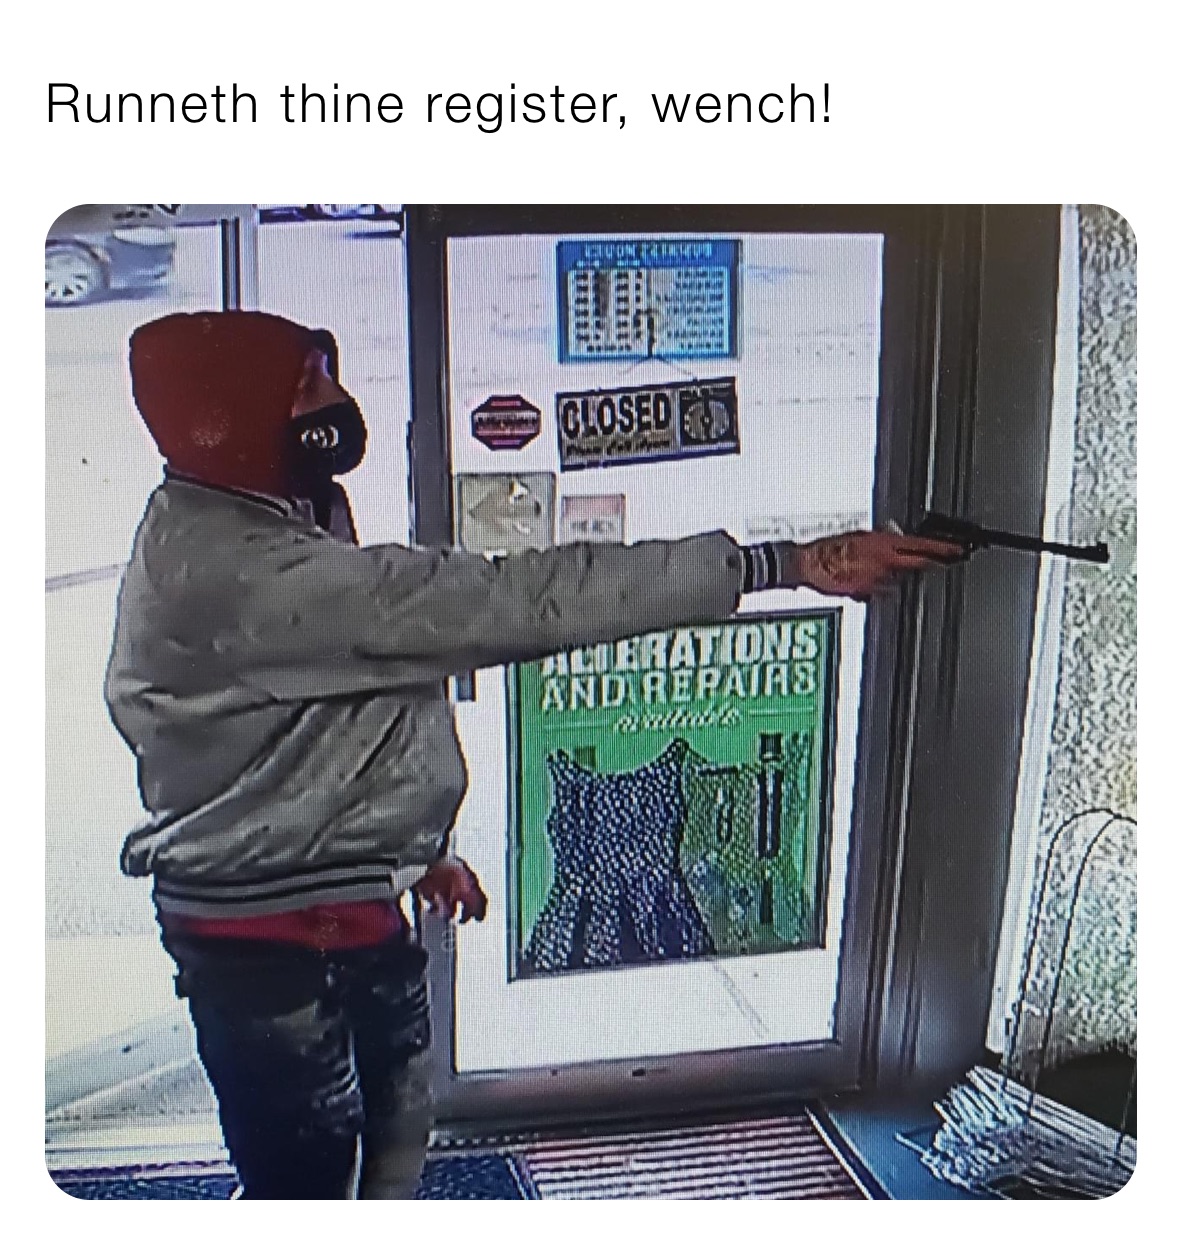 Runneth thine register, wench!